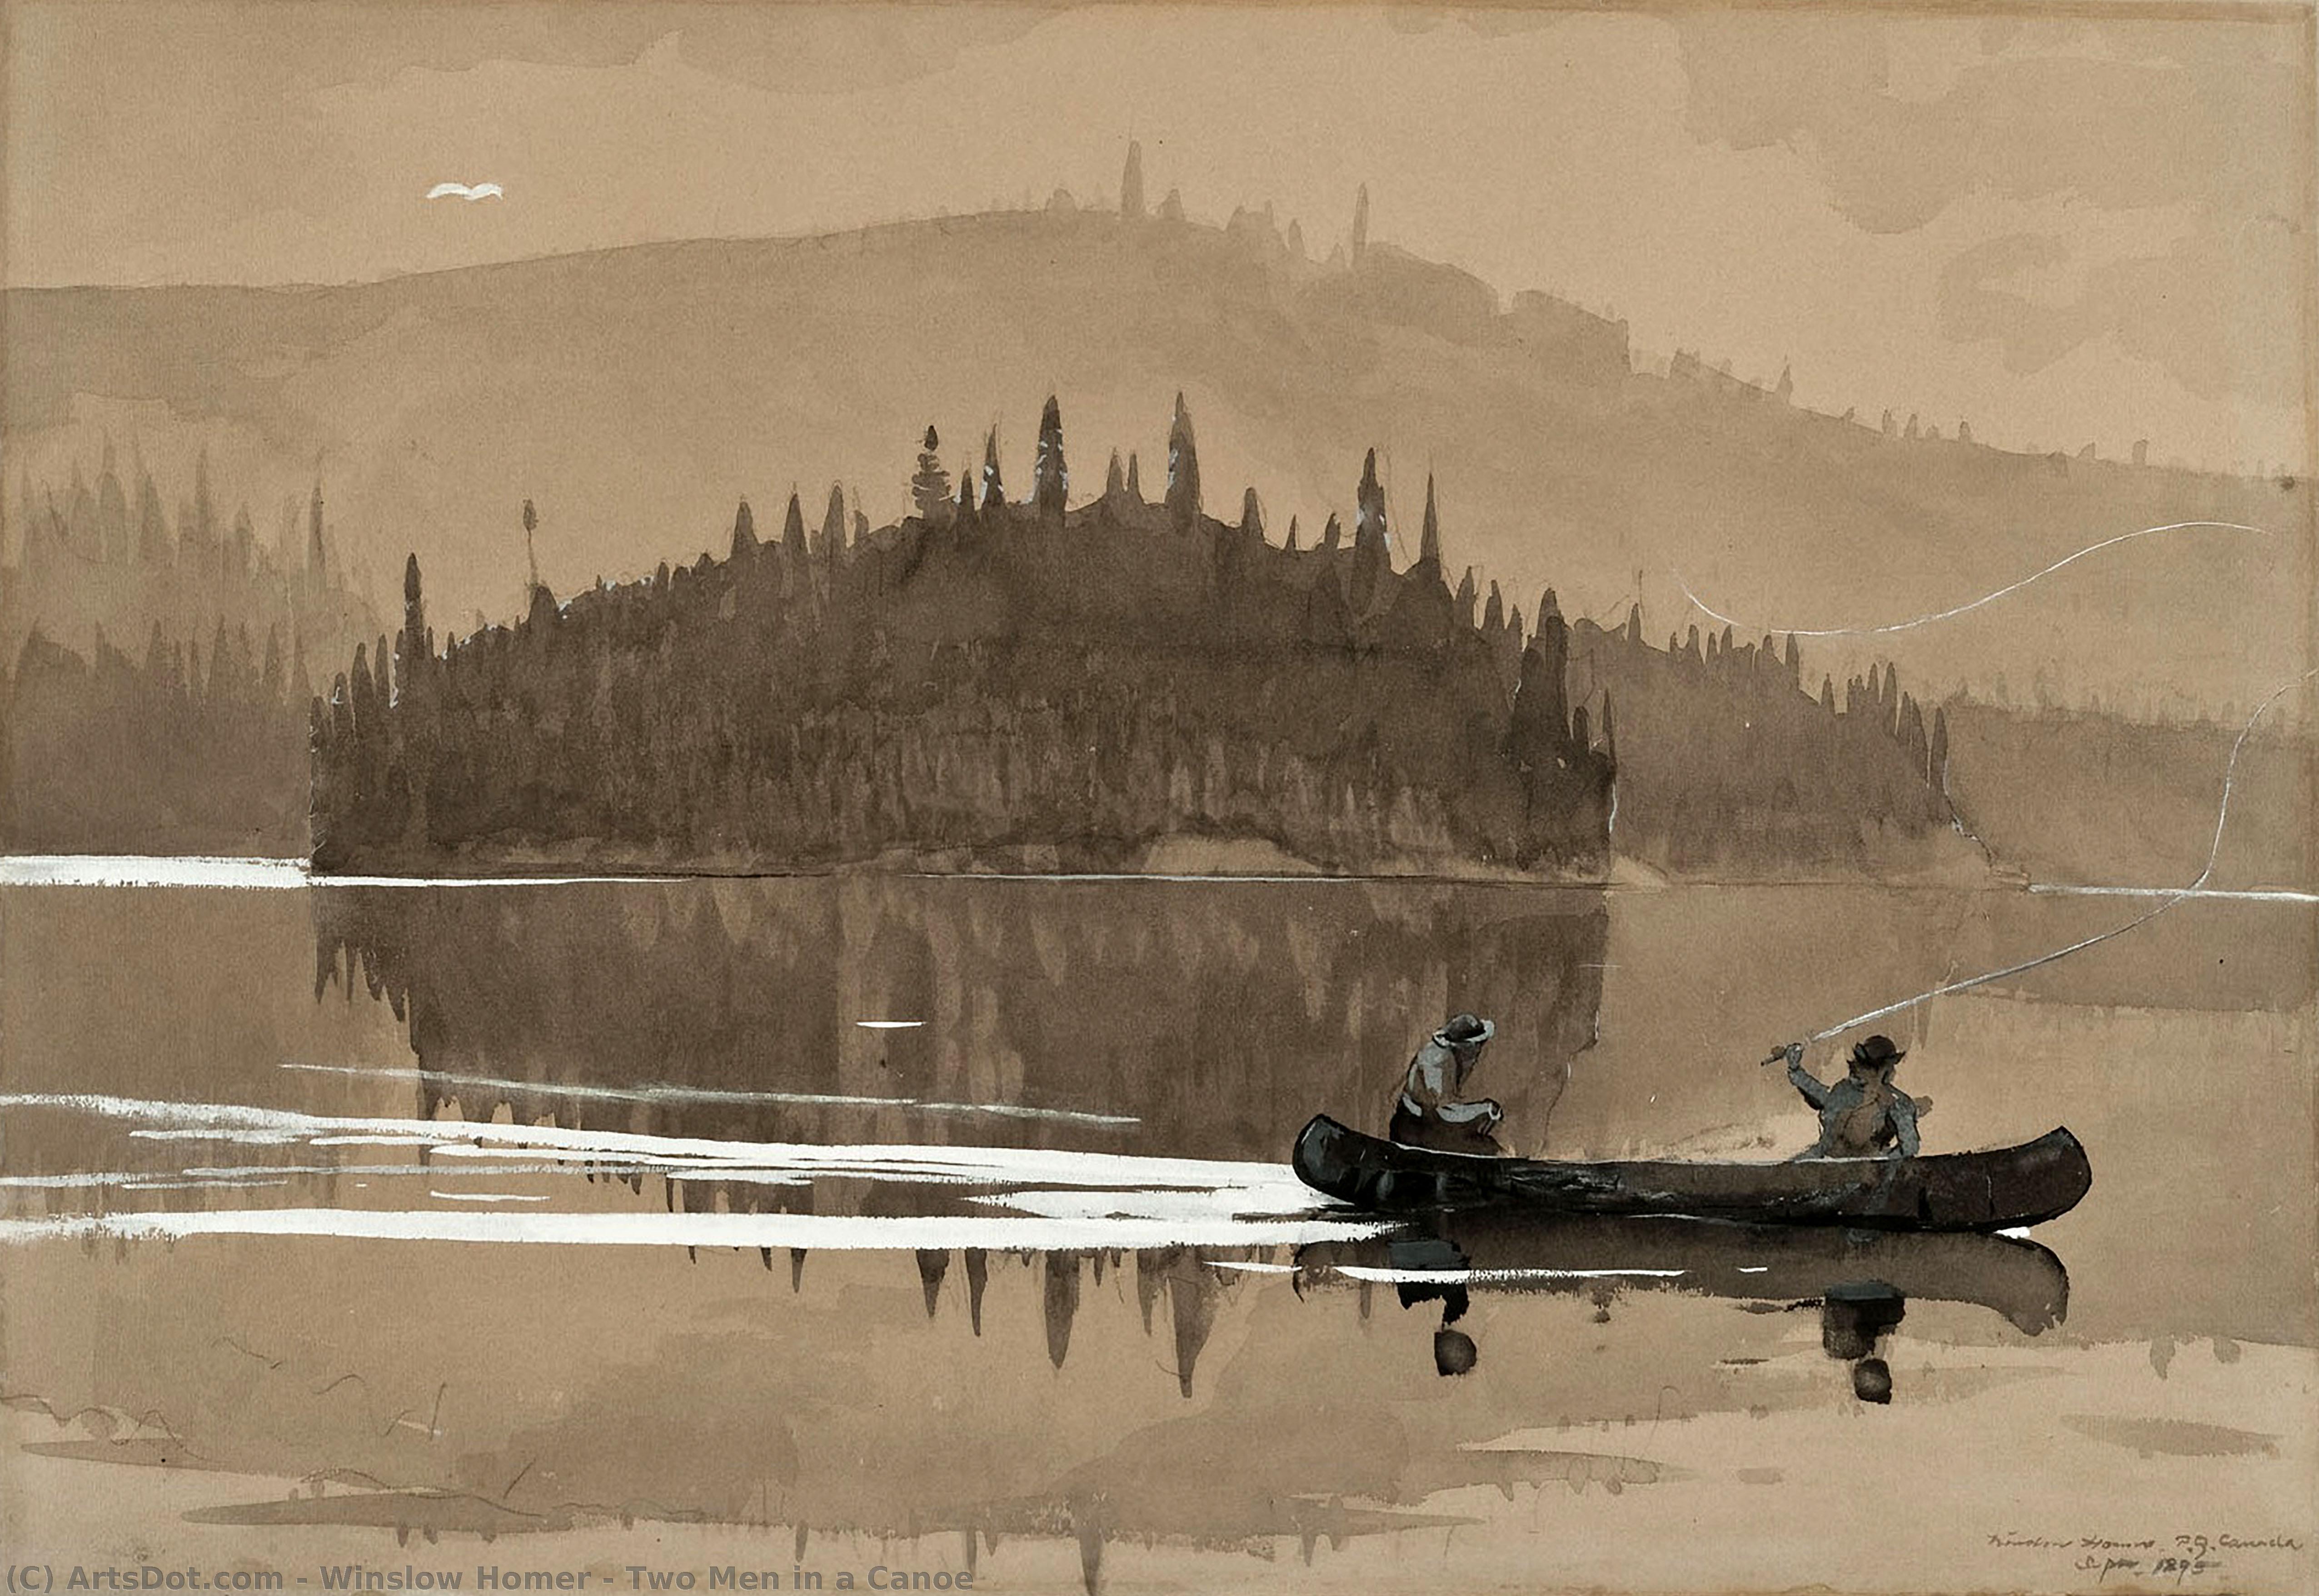 WikiOO.org - Encyclopedia of Fine Arts - Maleri, Artwork Winslow Homer - Two Men in a Canoe